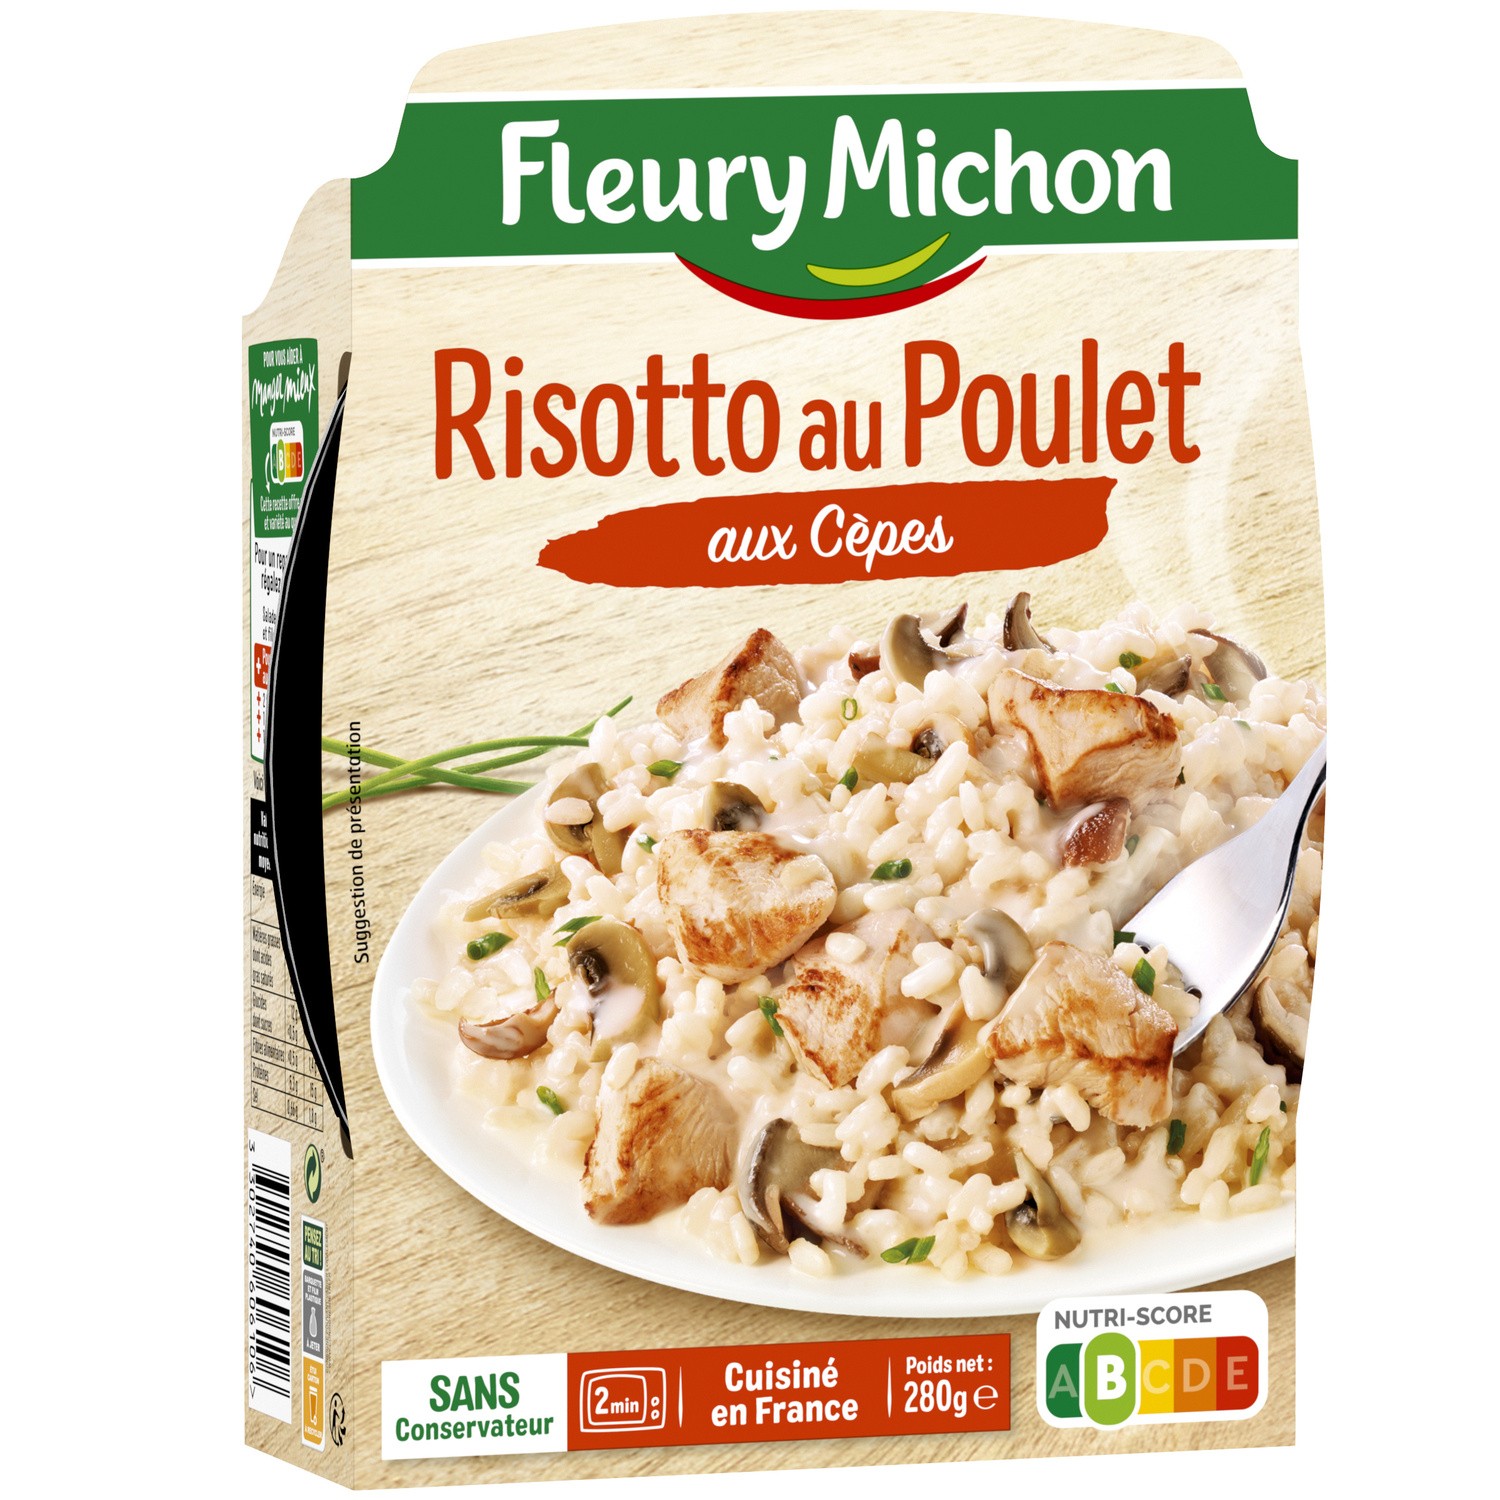 Promo Fleury michon plat cuisiné individuel offre économique chez Carrefour